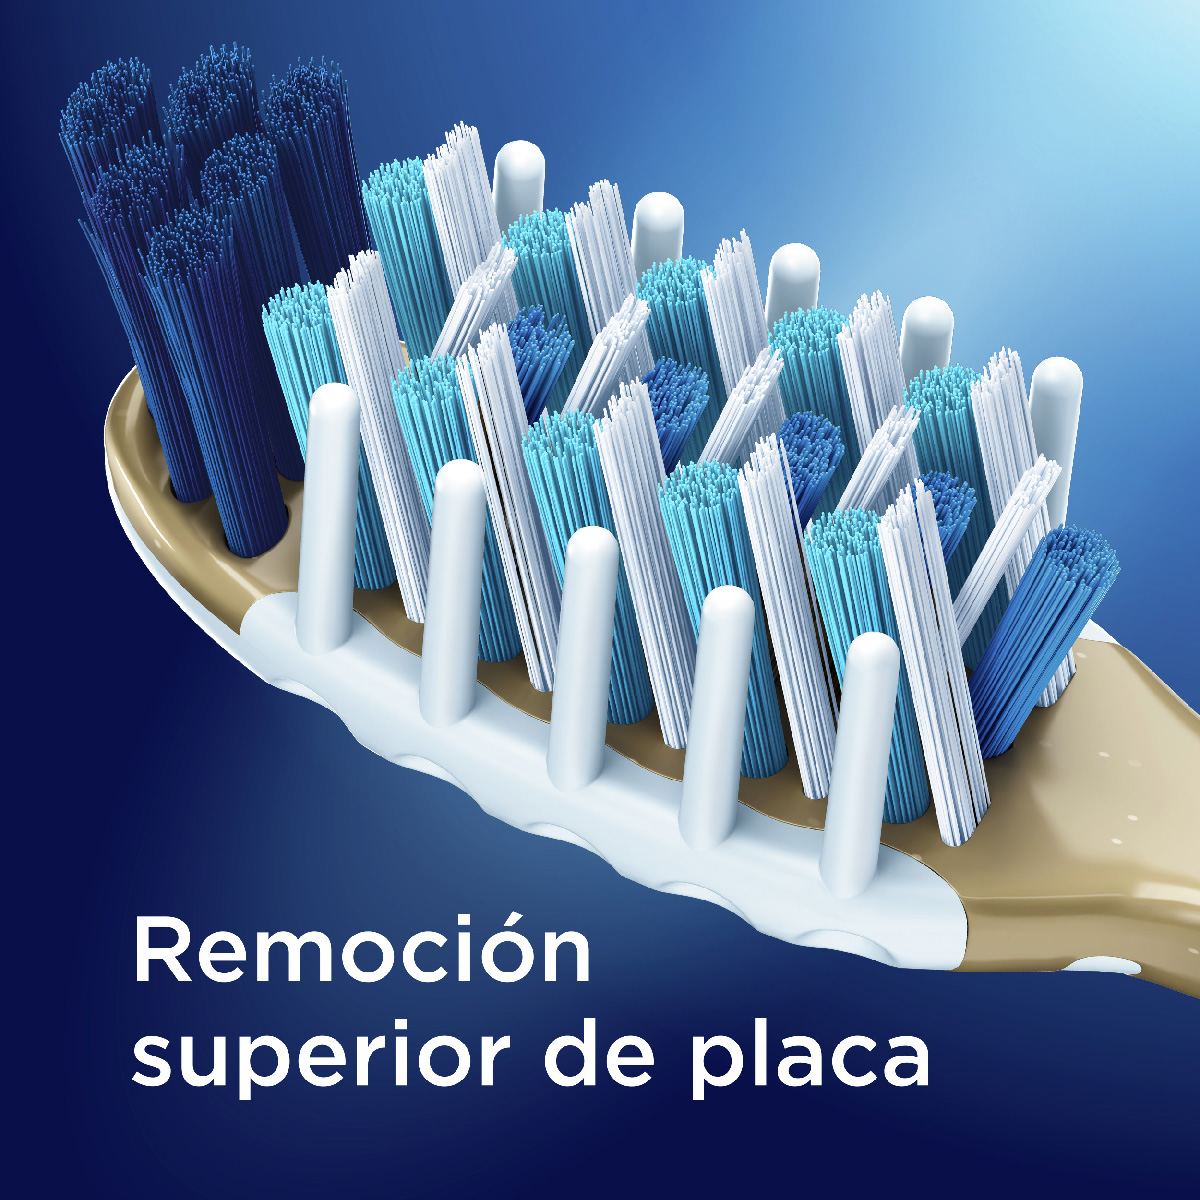 Hilo Dental Oral-B Expert Pro-Salud, 25 m.